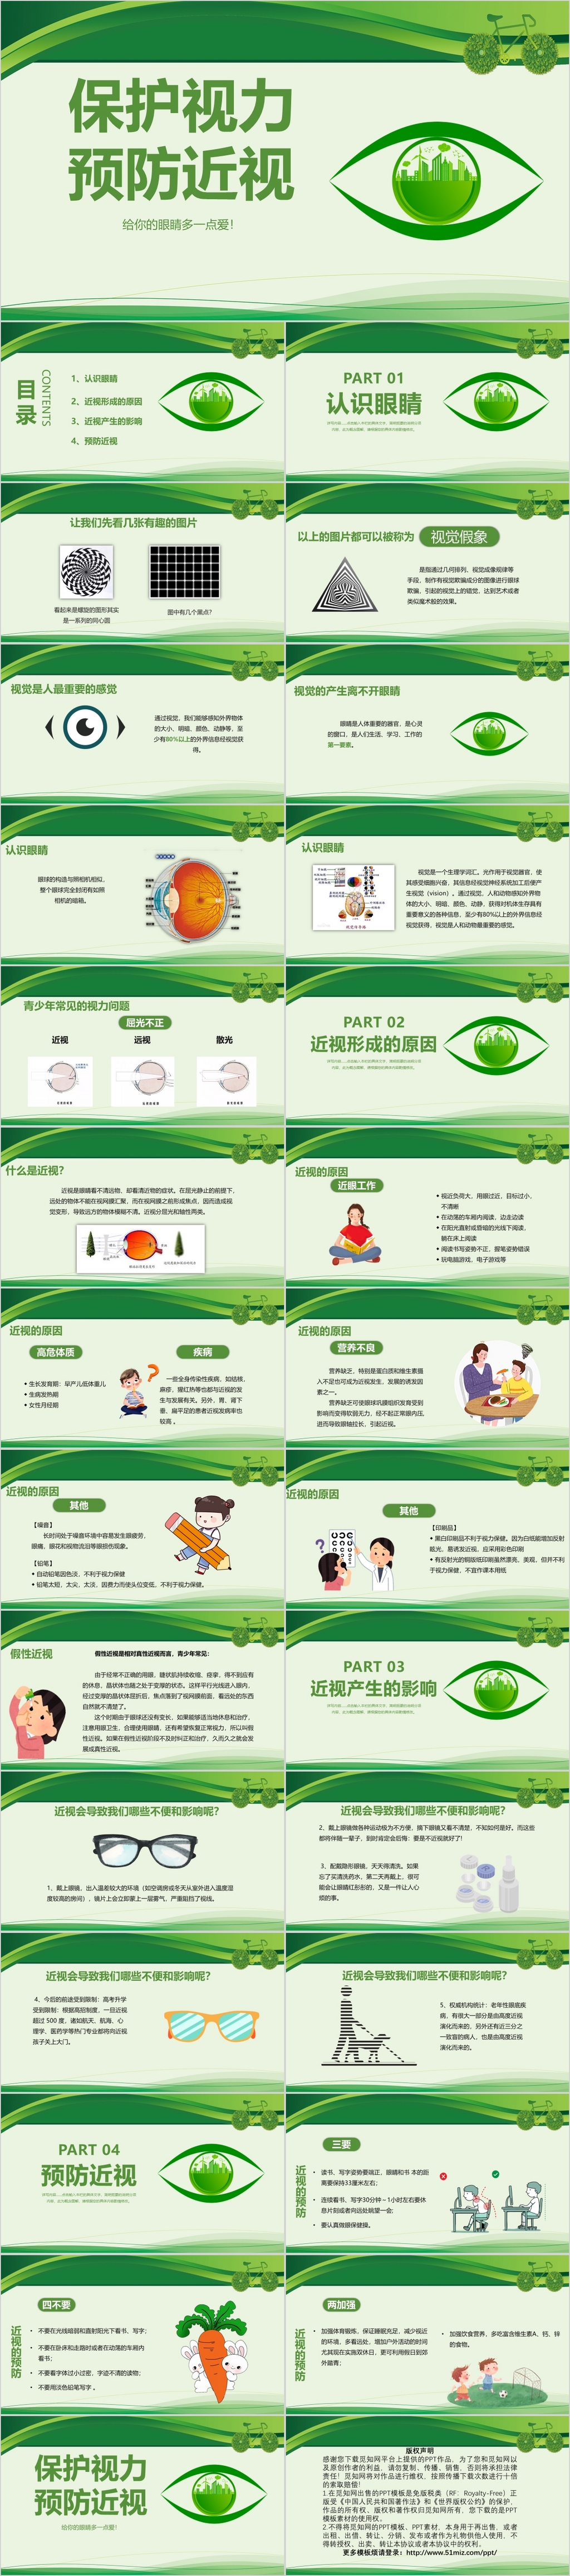 绿色护眼保护视力预防近视班会主题ppt模板